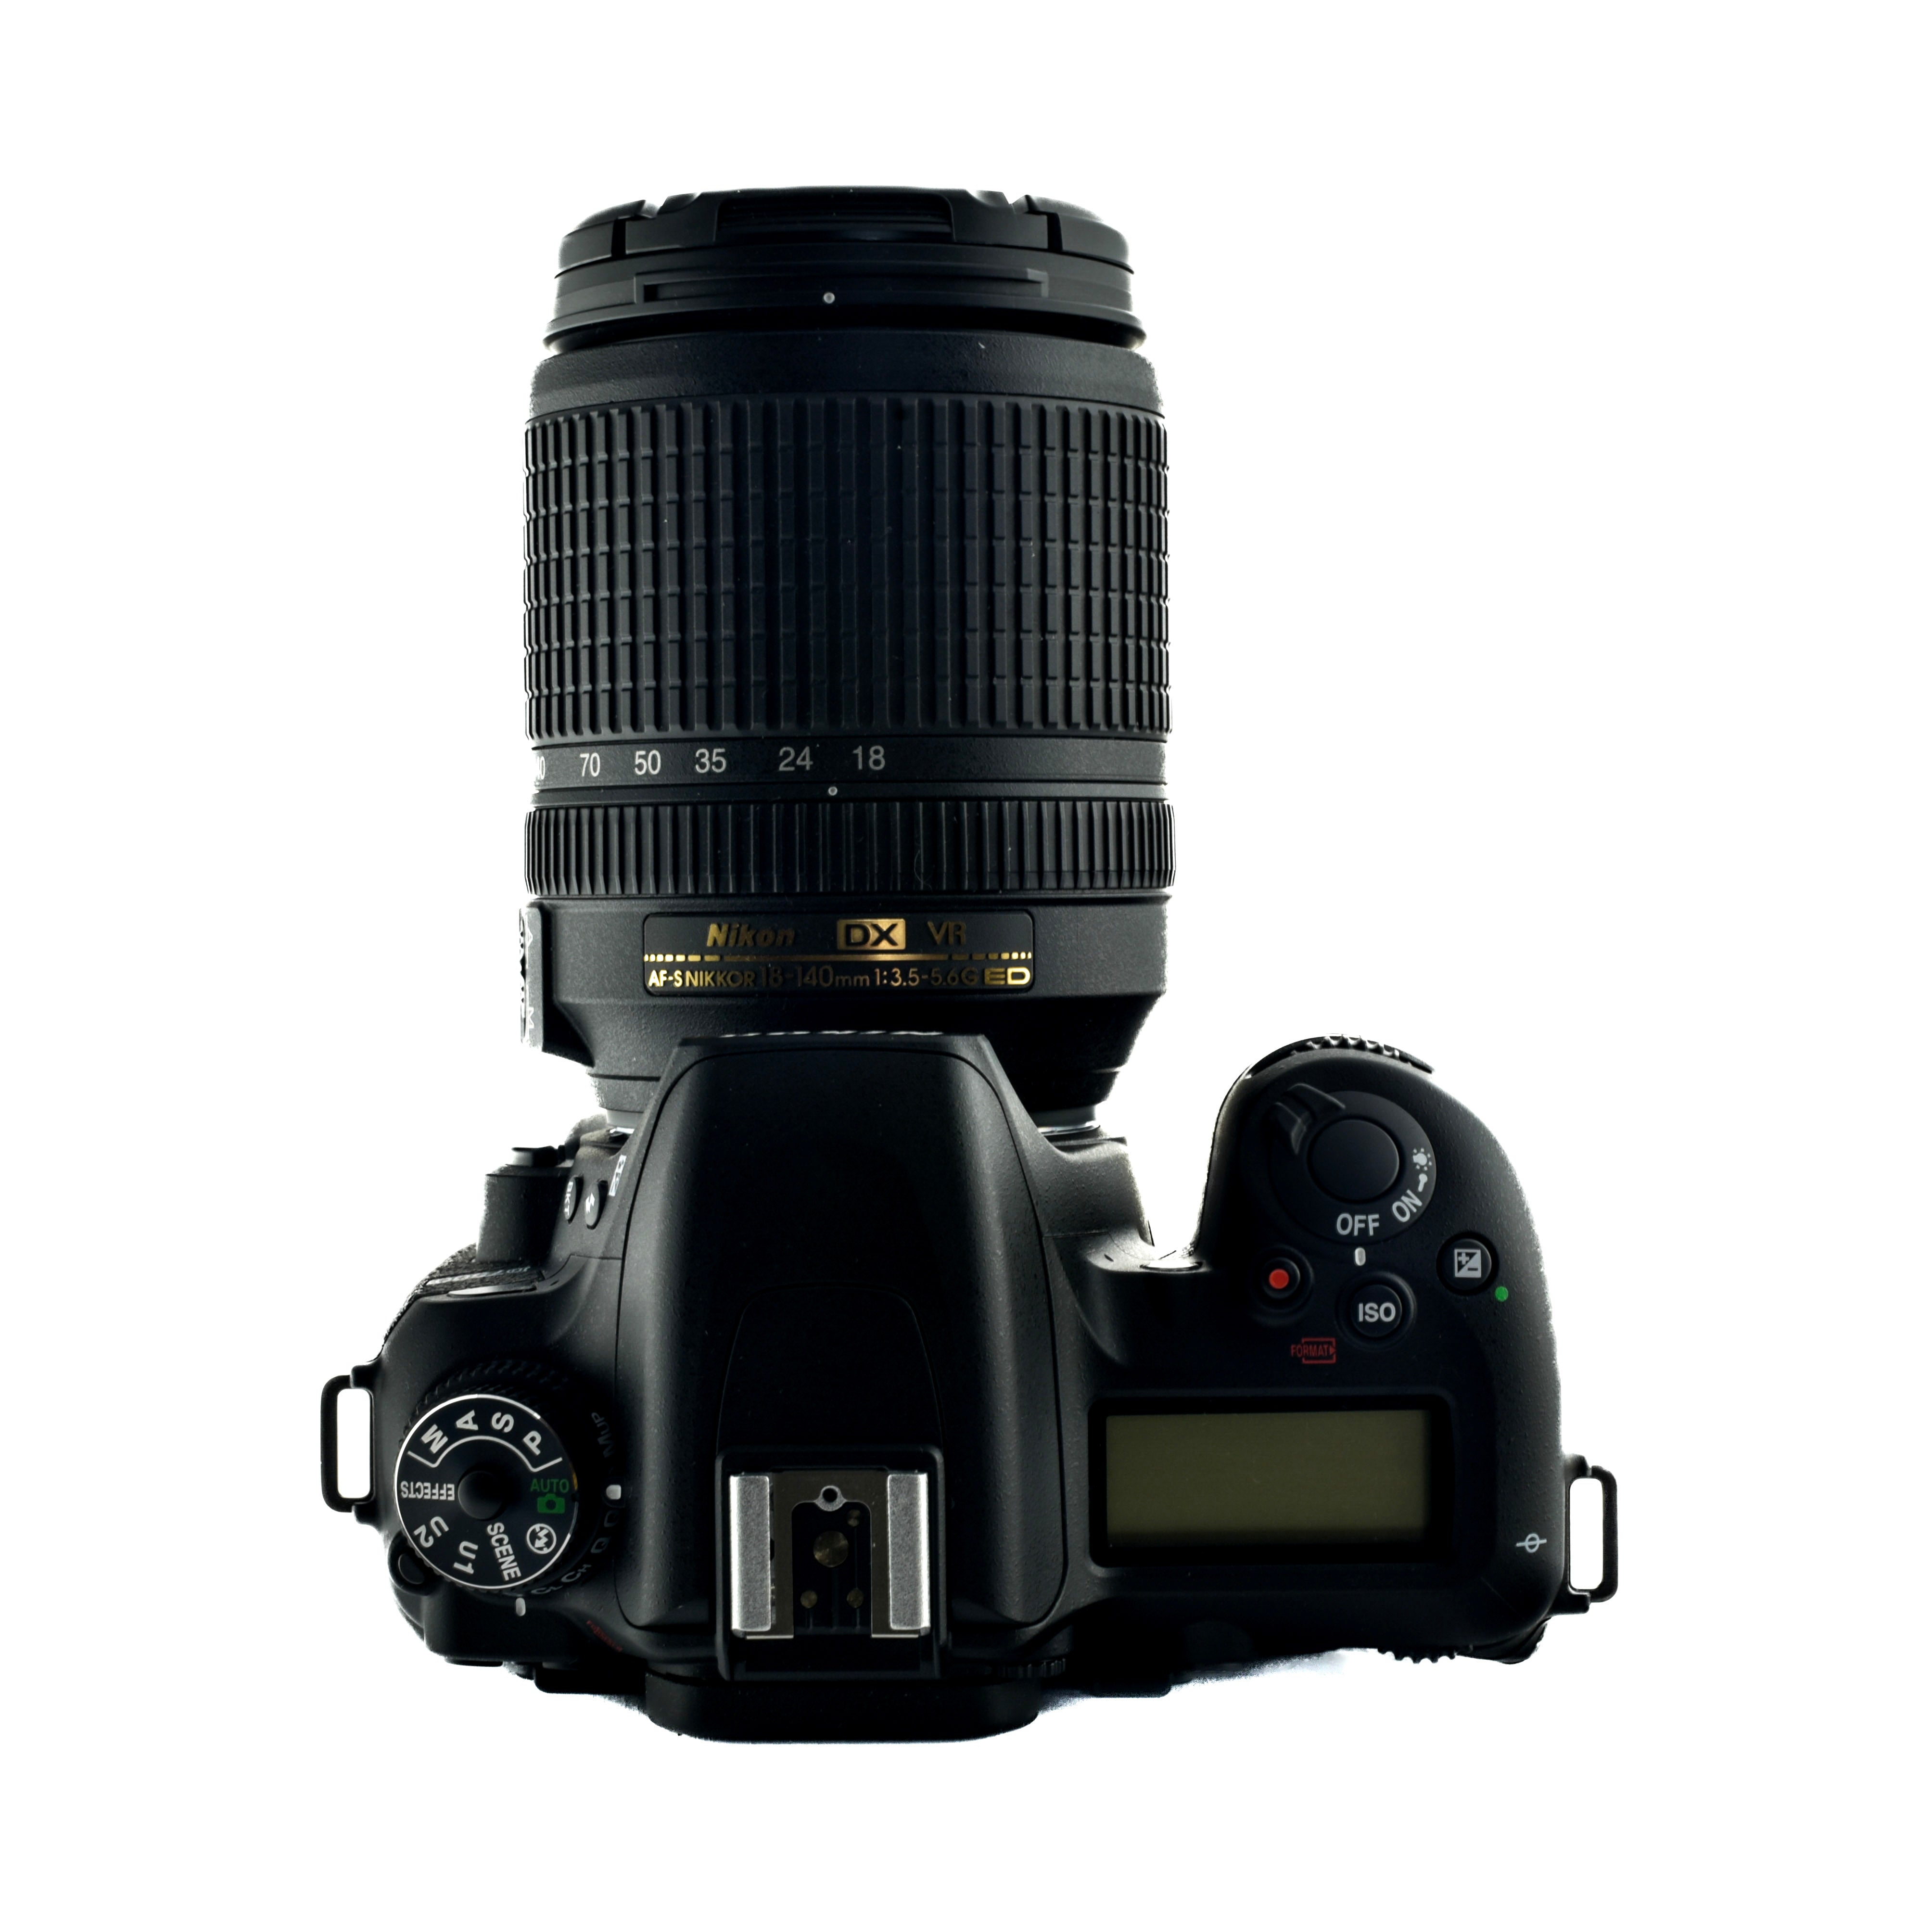 Nikon D7500 Dslr Camera & 18-140mm f3.5-5.6G ED VR lens